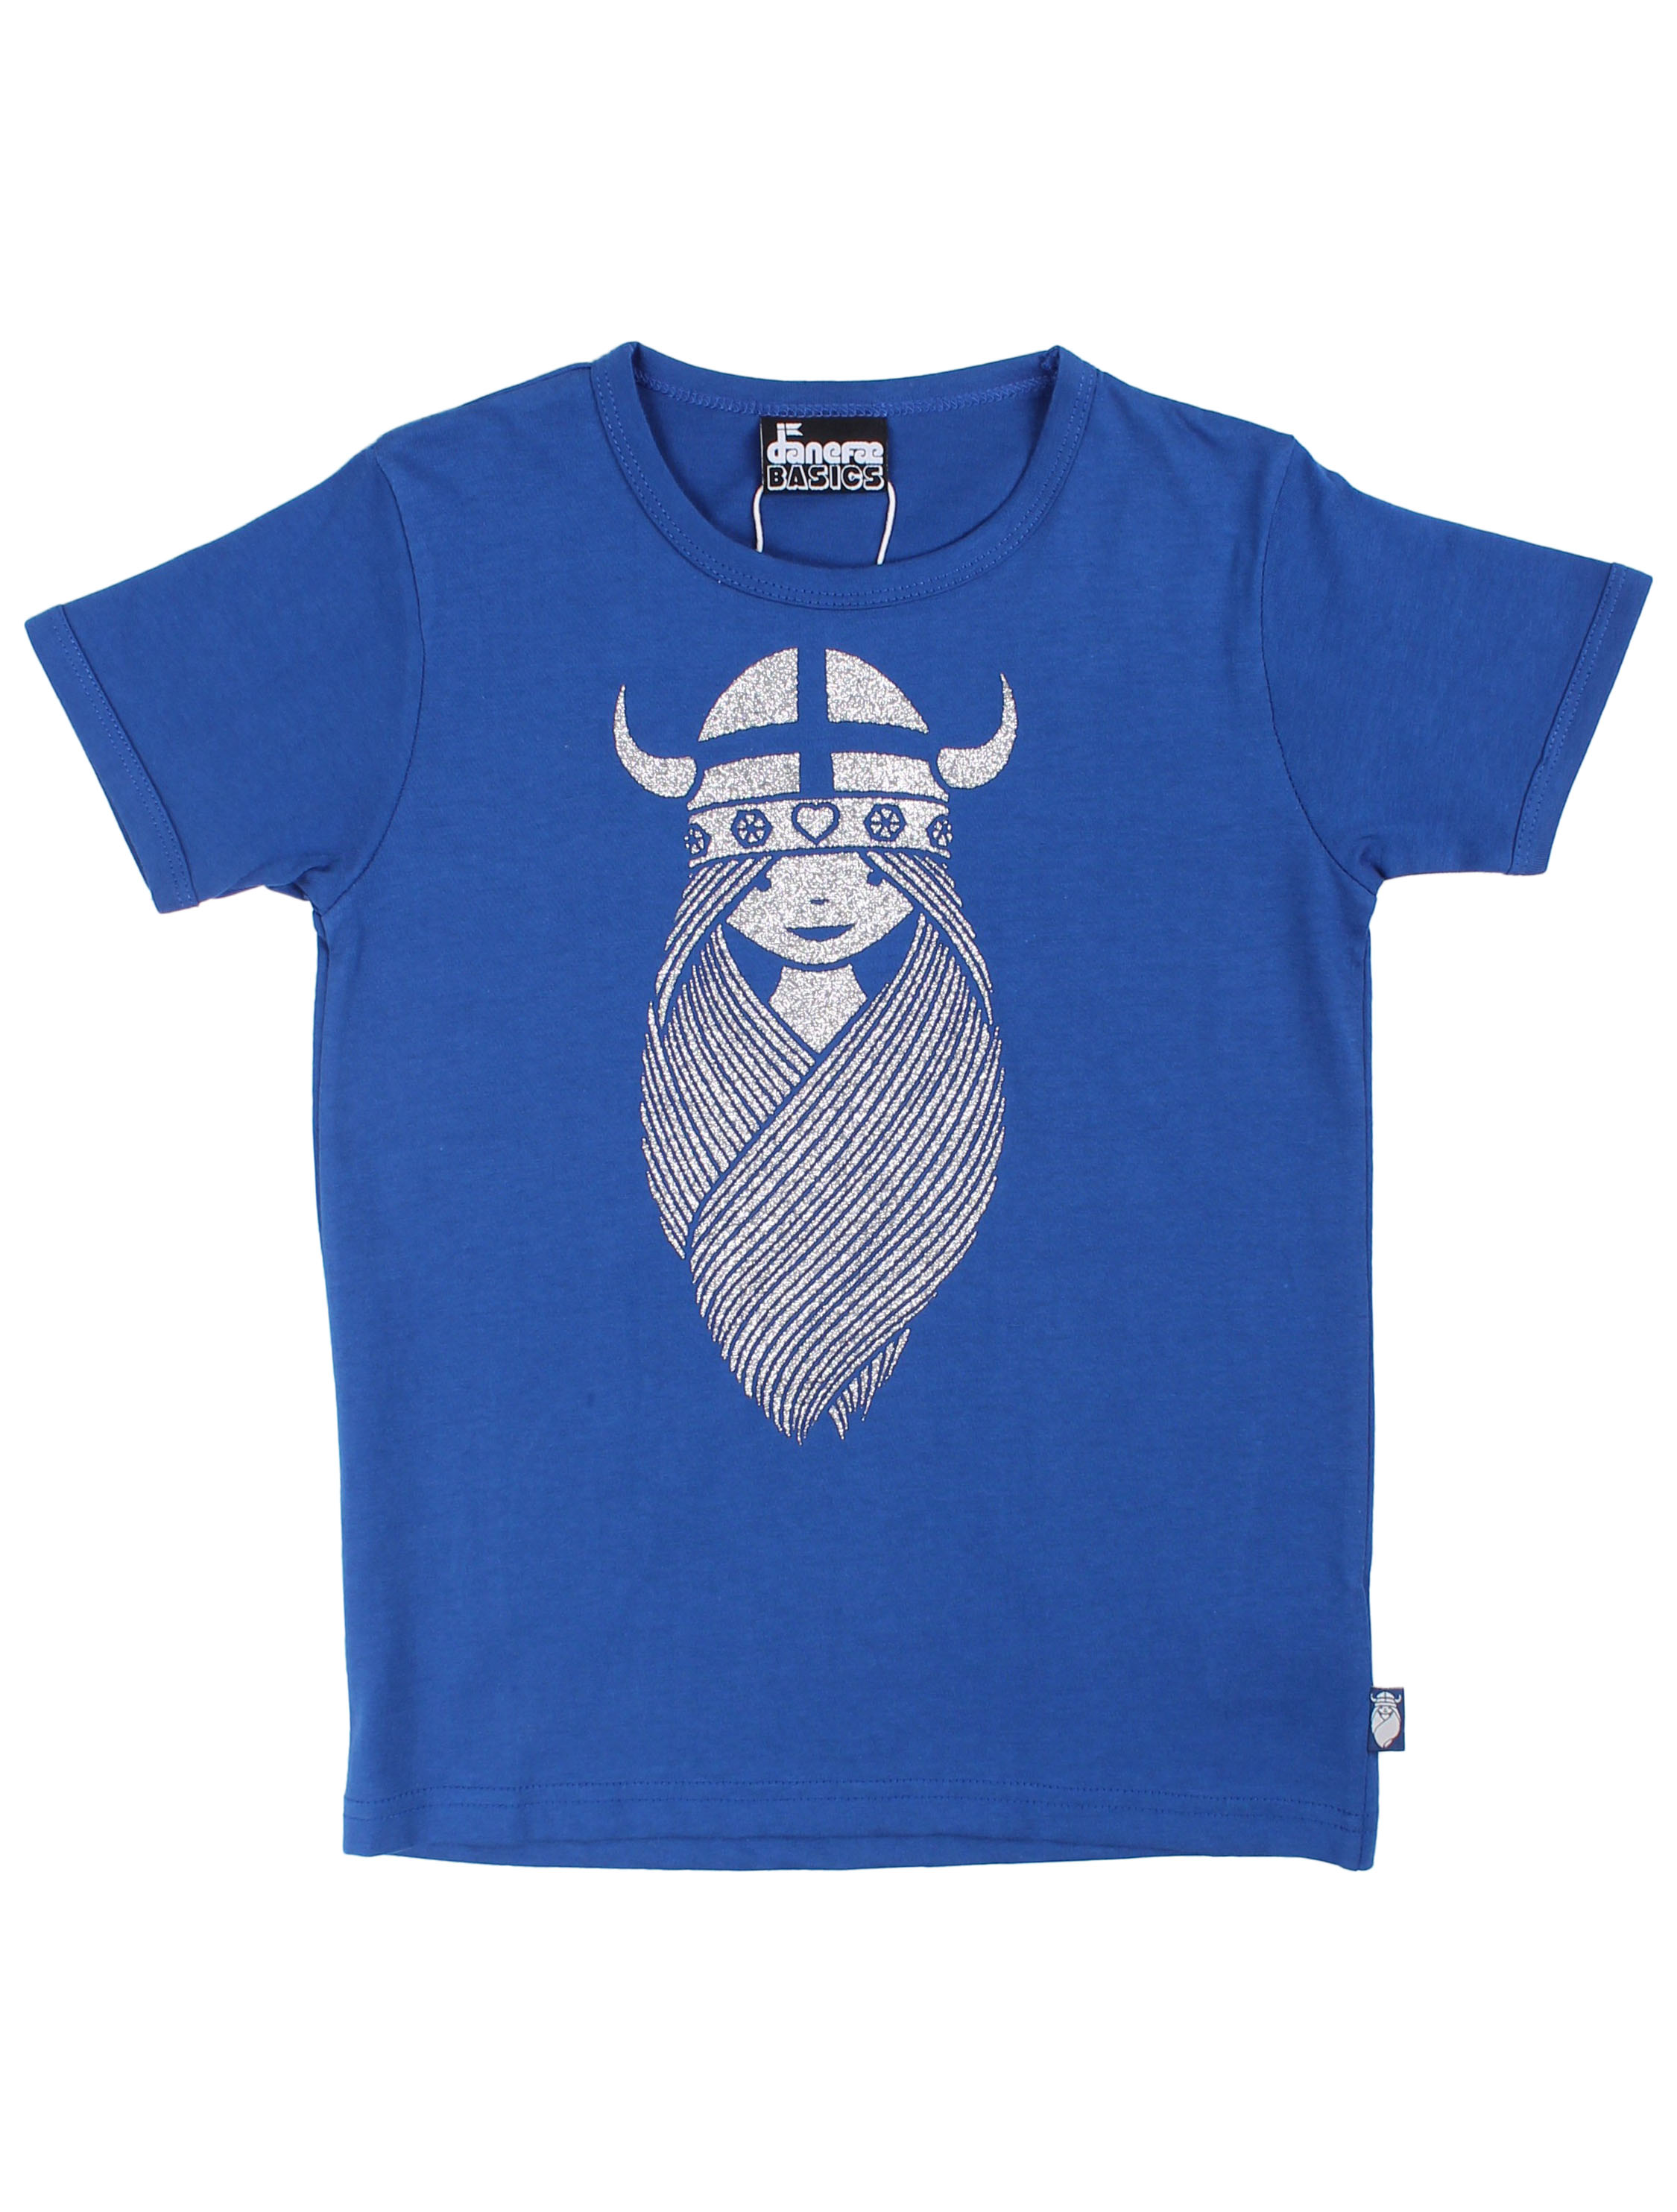 Danefae flot glimmer T- Shirt med i blå Mærker - IsaDisaKids